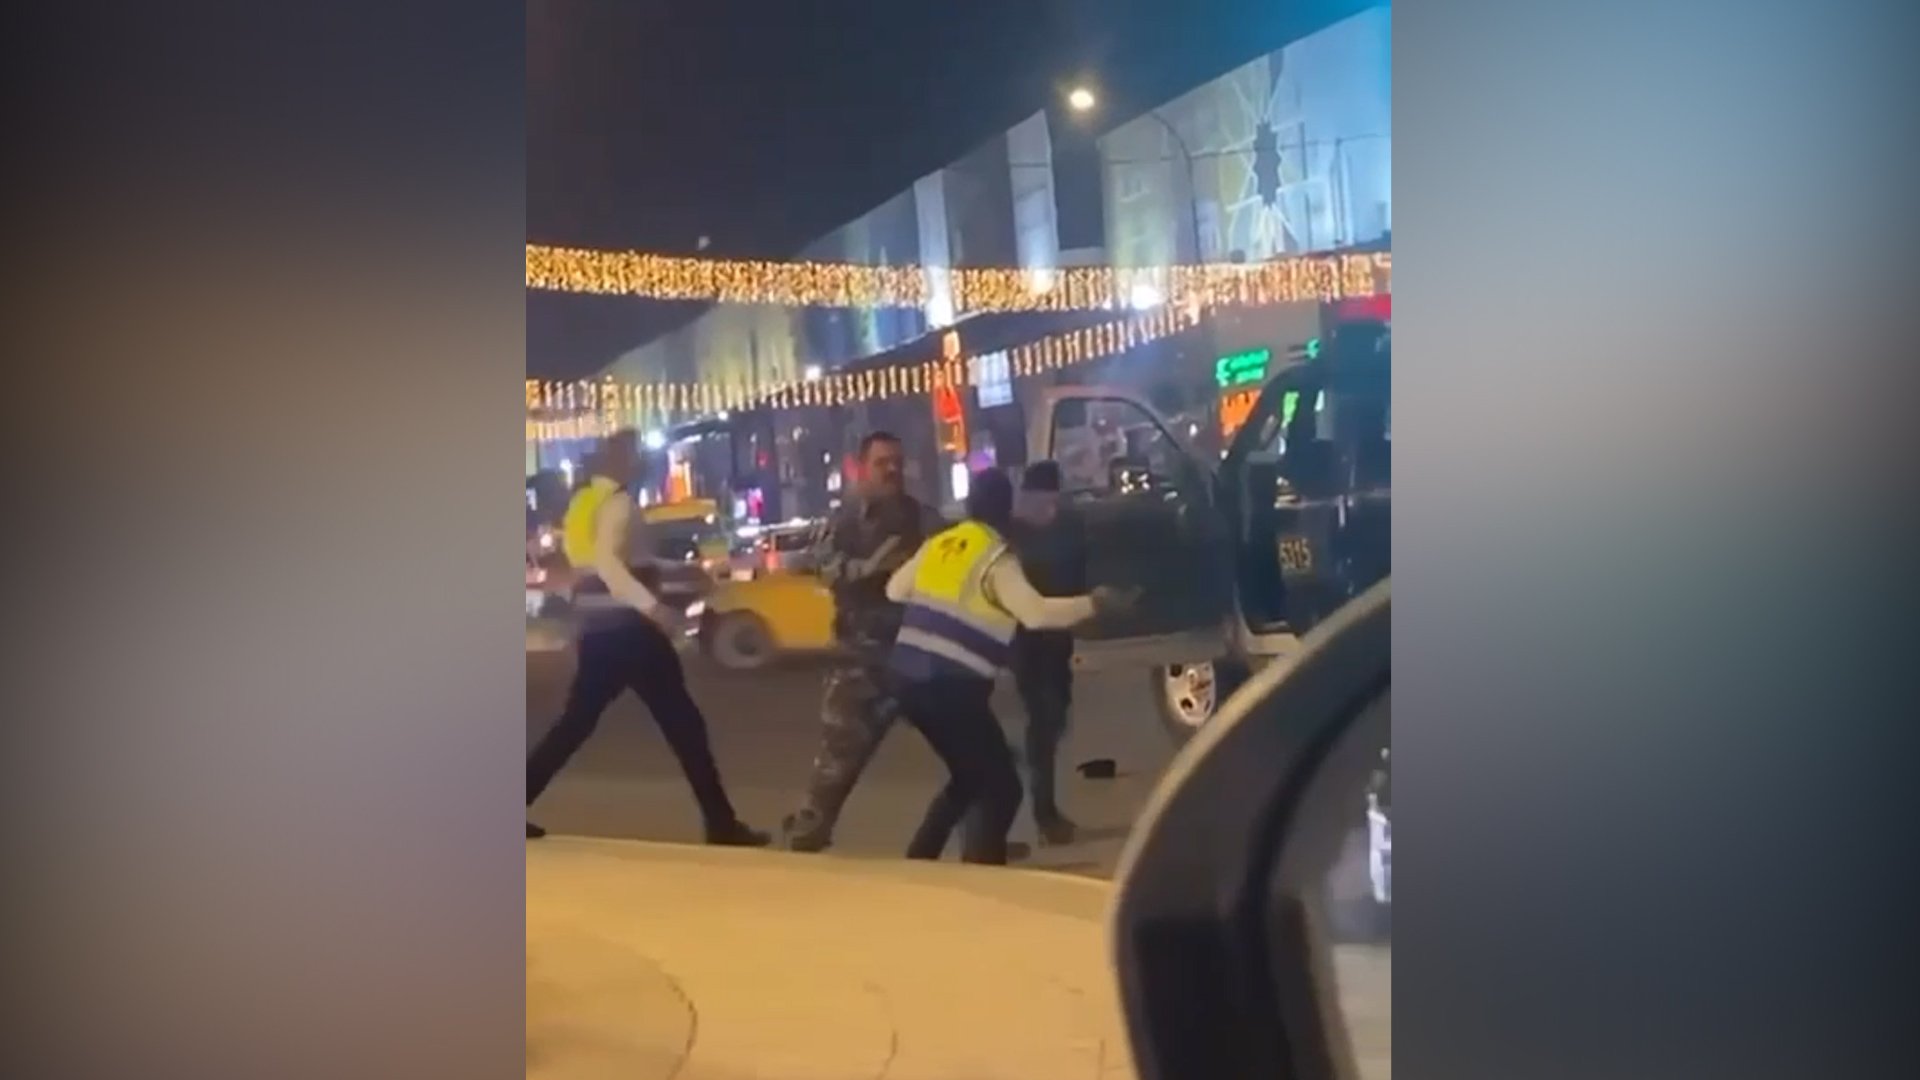 فيديو: زاوية أخرى لمعركة المنصور بين شرطي المرور والاتحادية قد تغير رأيك!